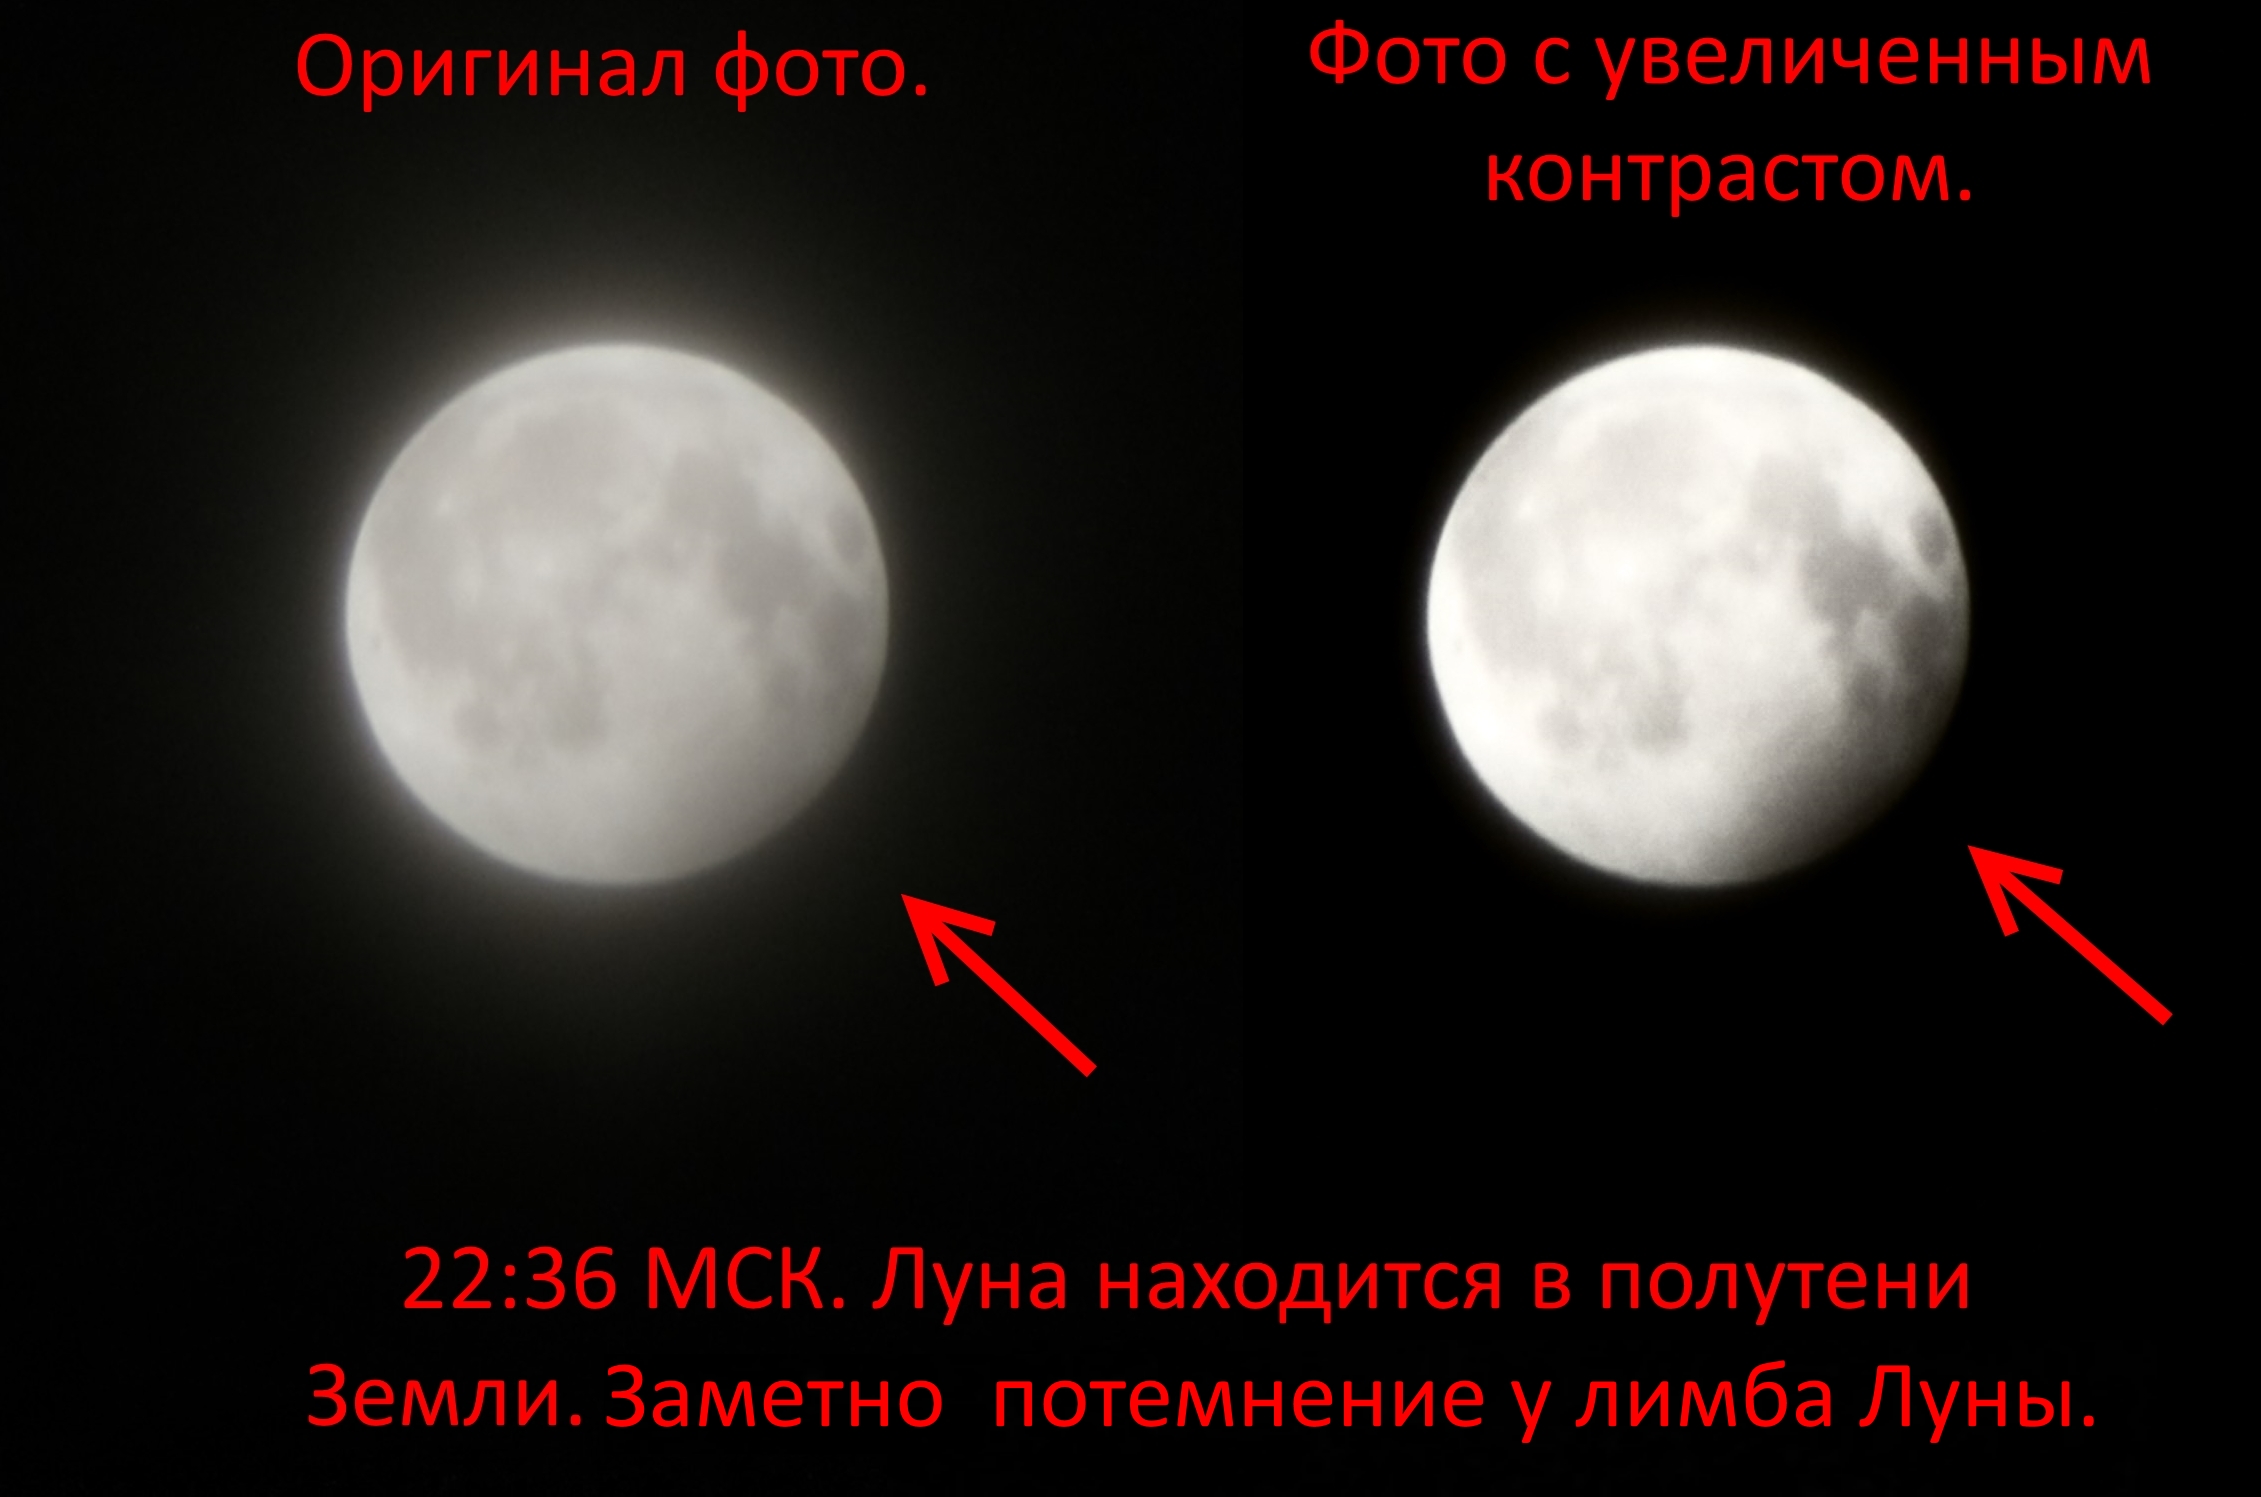 Полутеневая фаза лунного затмения в 22:36 Фото: предоставлено Филиппом